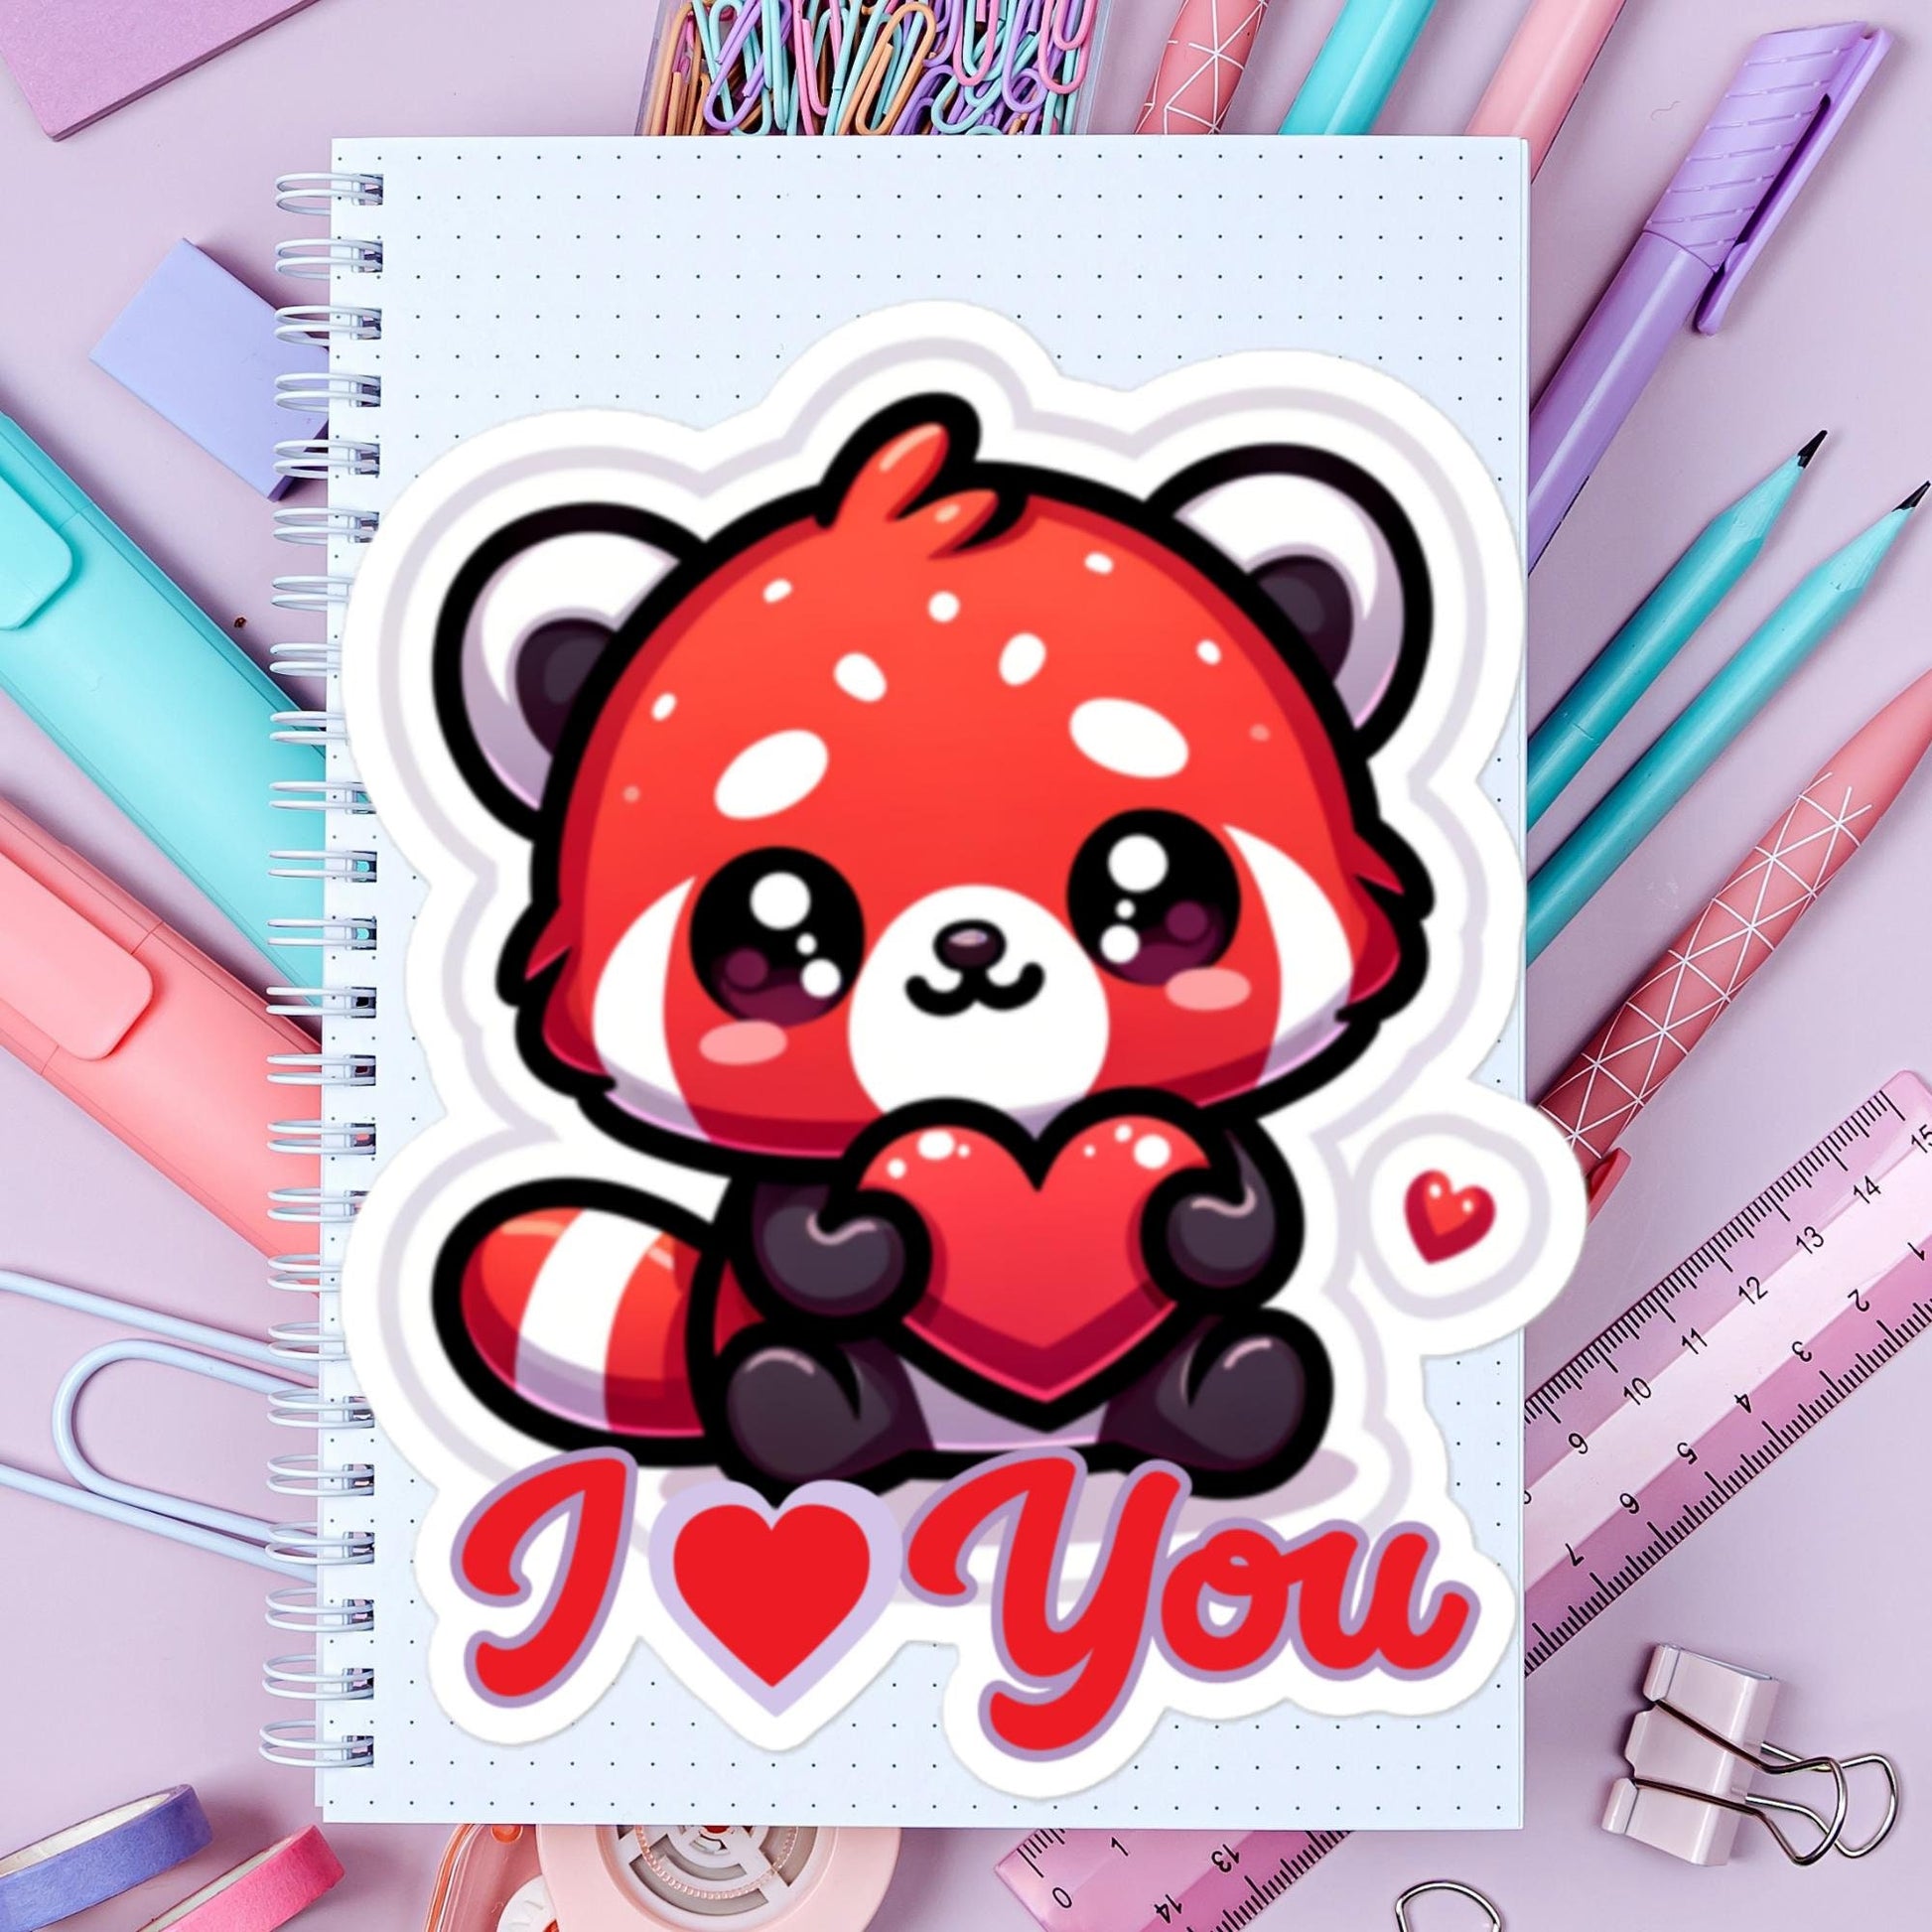 I Heart You Red Panda Valentine Sticker Fun stickers animal stickers Bubble-free stickers